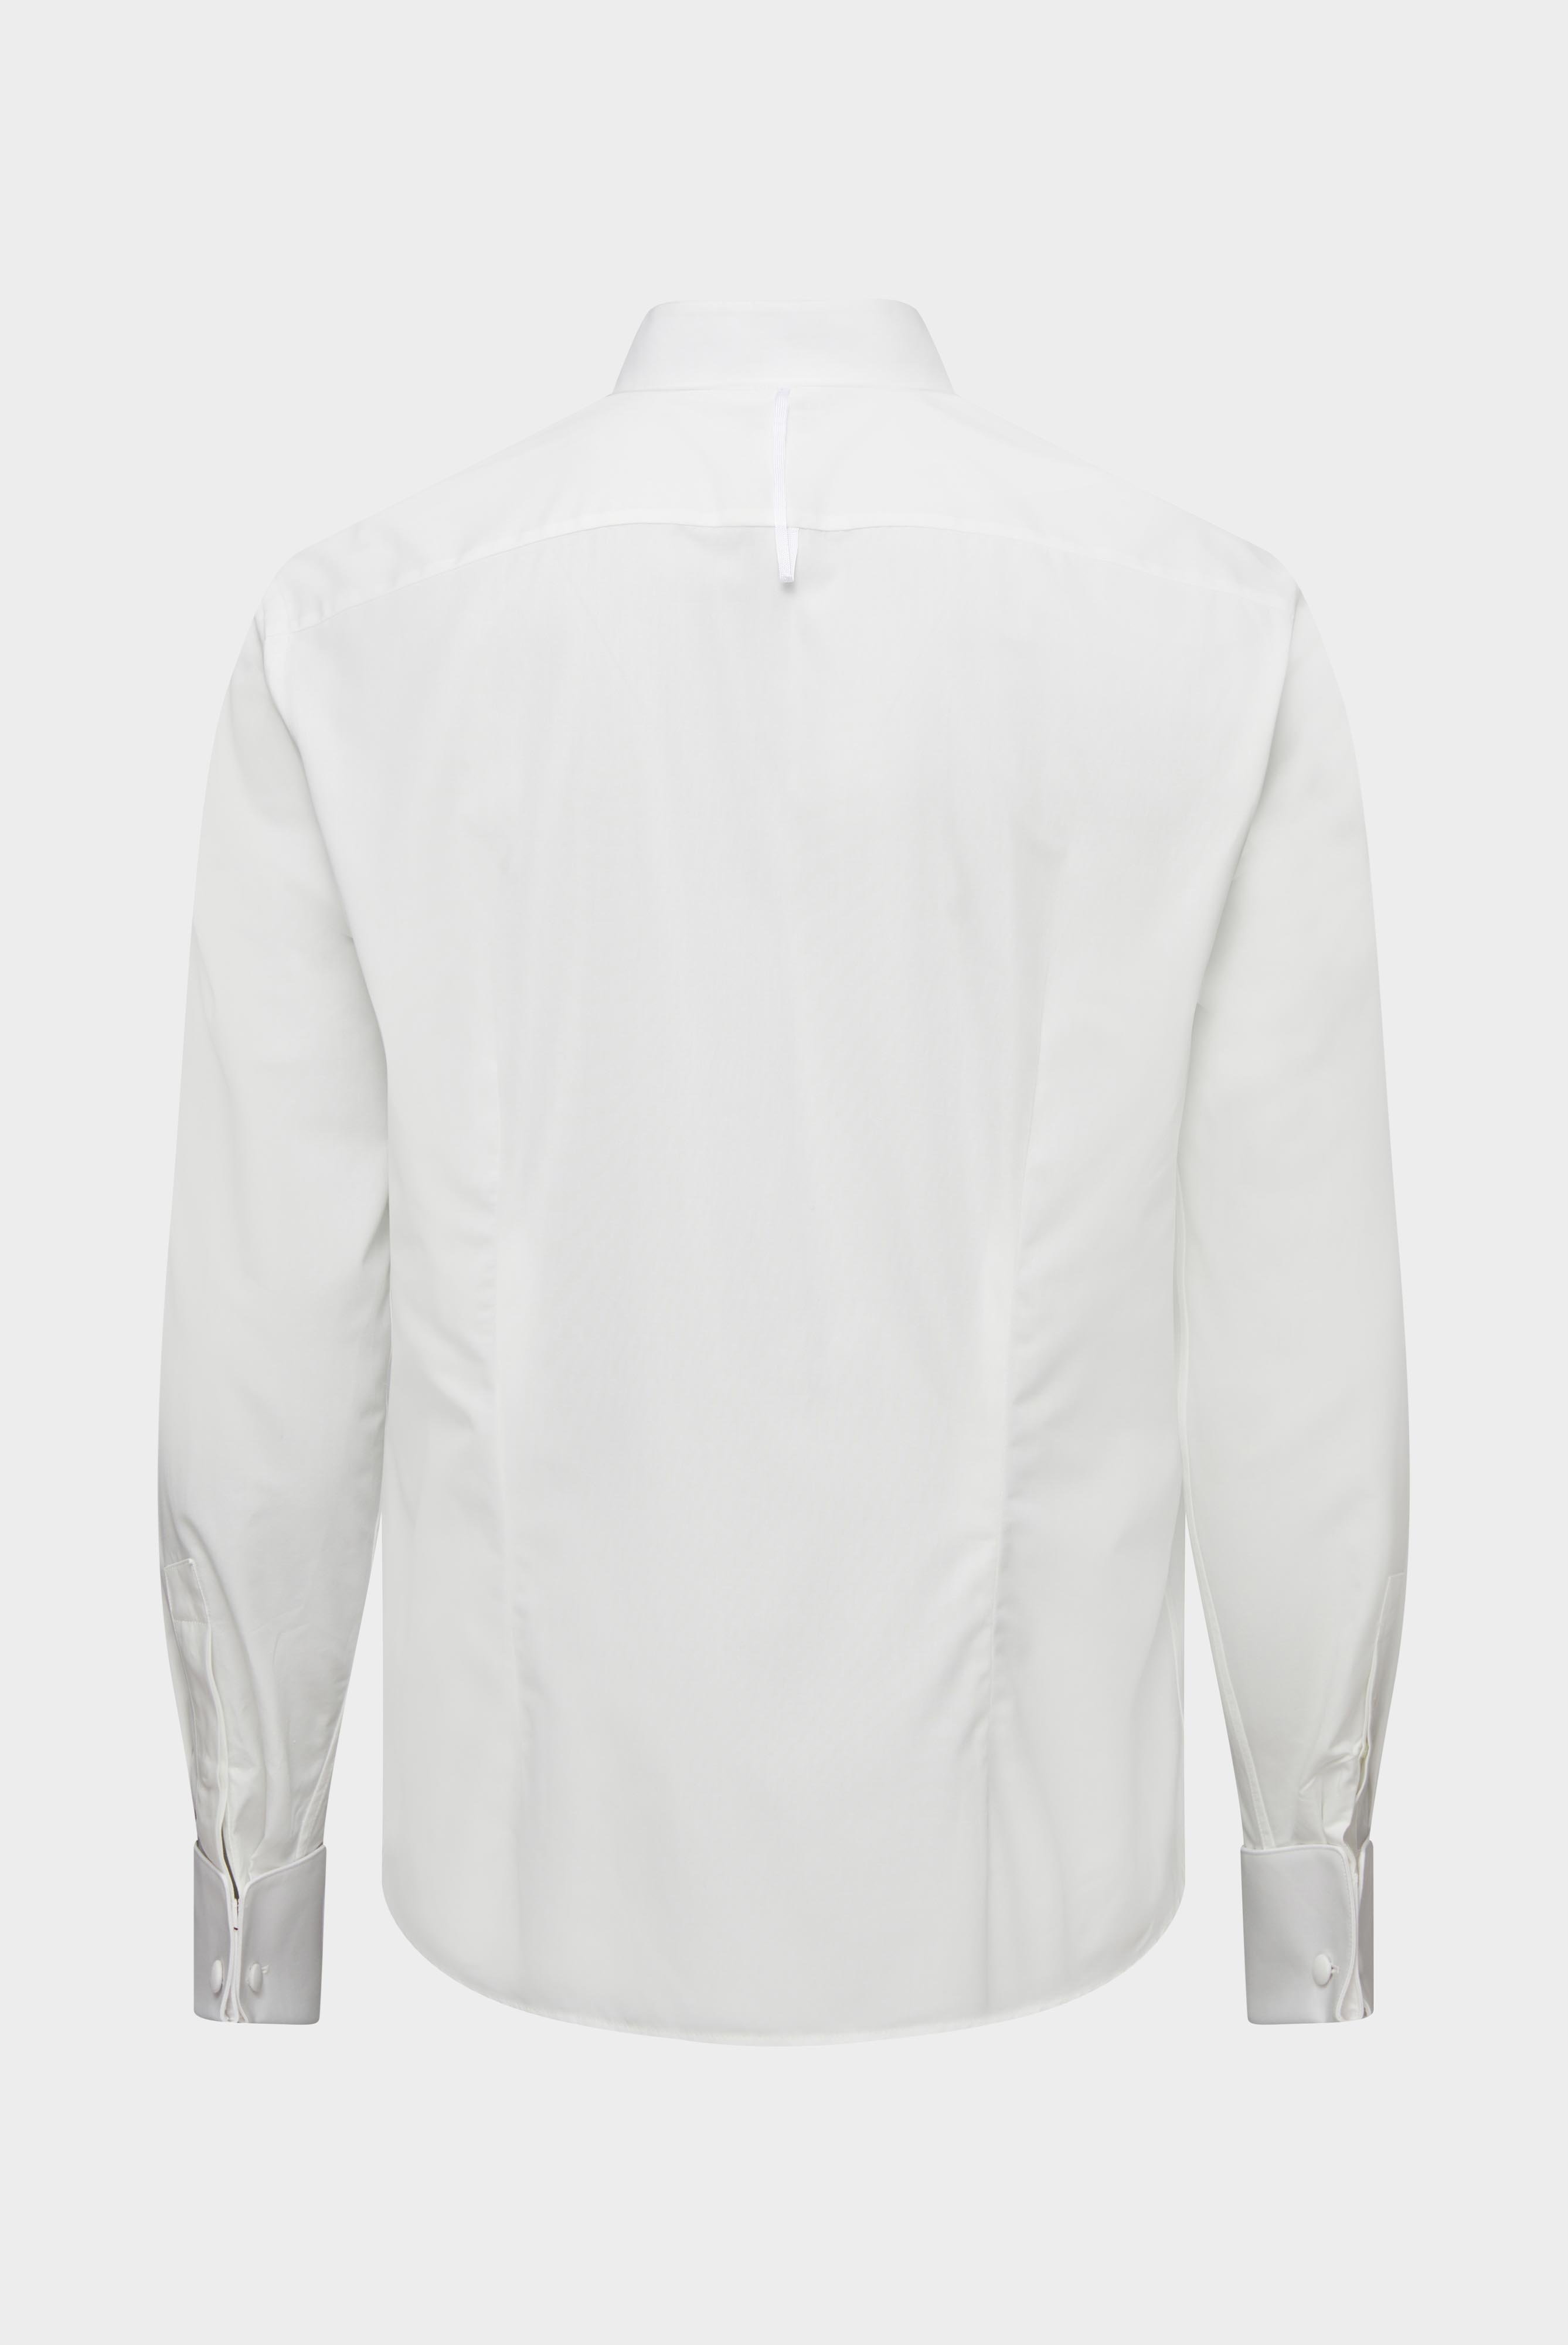 Festliche Hemden+Smokinghemd mit Kläppchenkragen Tailor Fit+20.2060.NV.130657.100.37